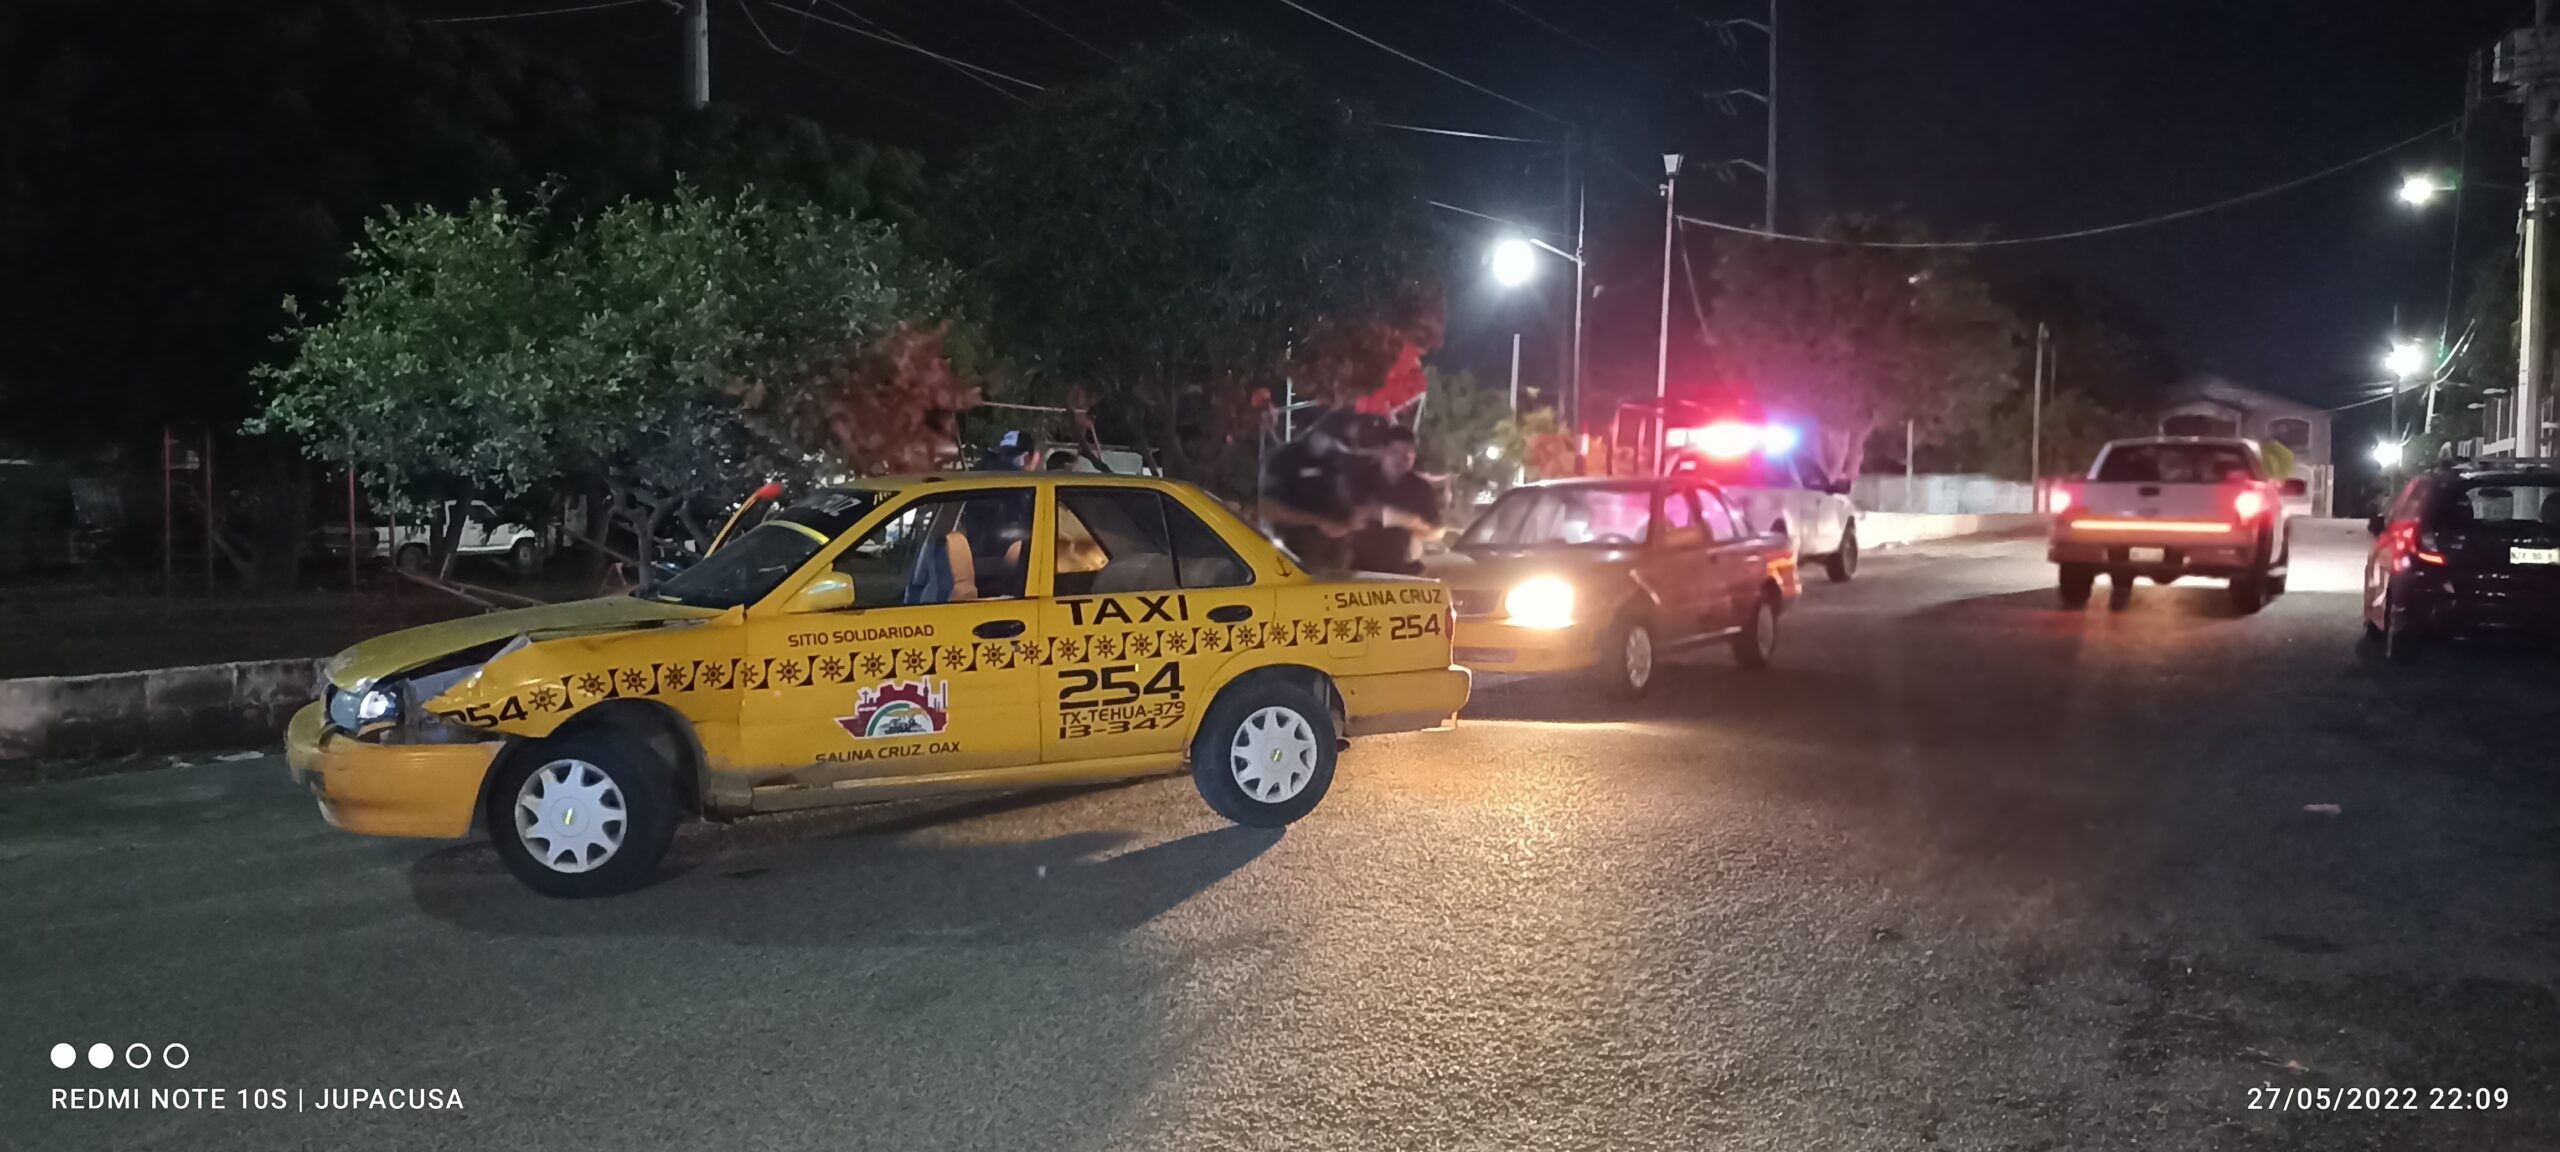 Taxista provoca choque y huye | El Imparcial de Oaxaca